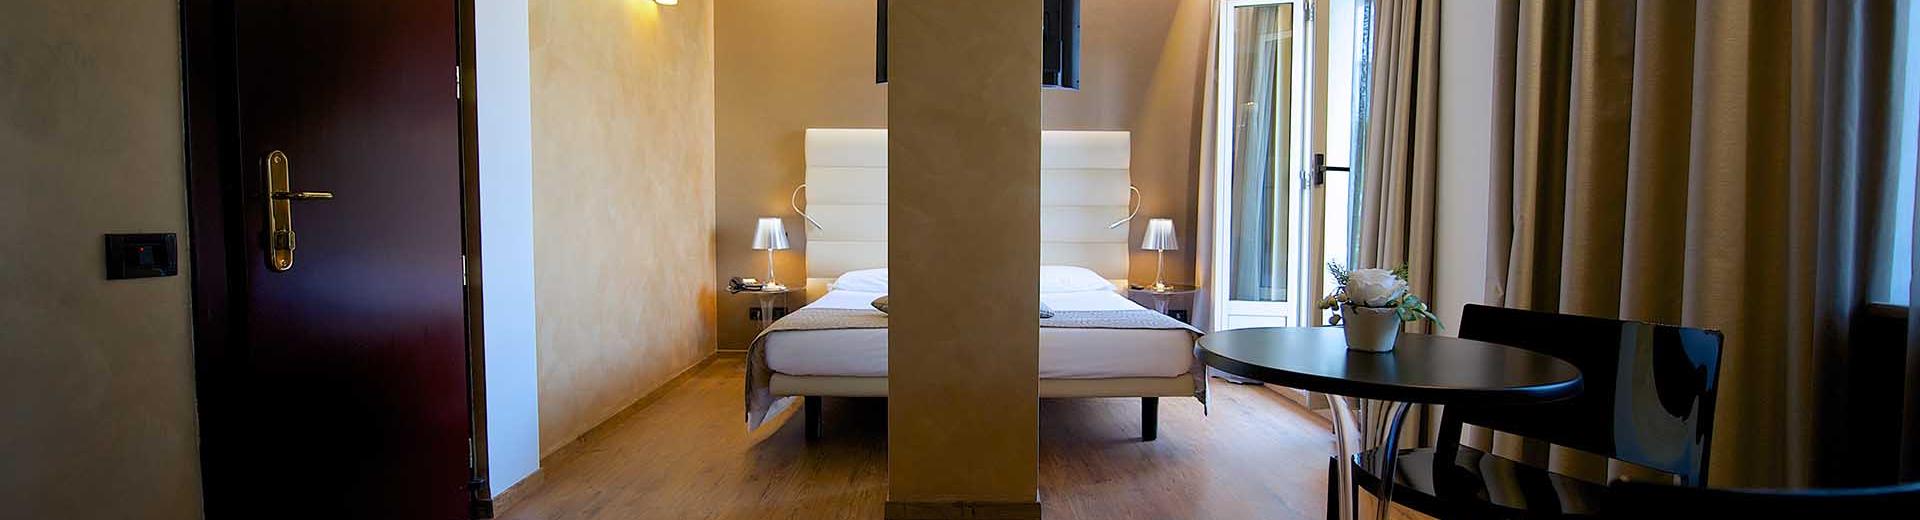 Eleganza nelle camere superior del BW Hotel Luxor 4 stelle a Torino